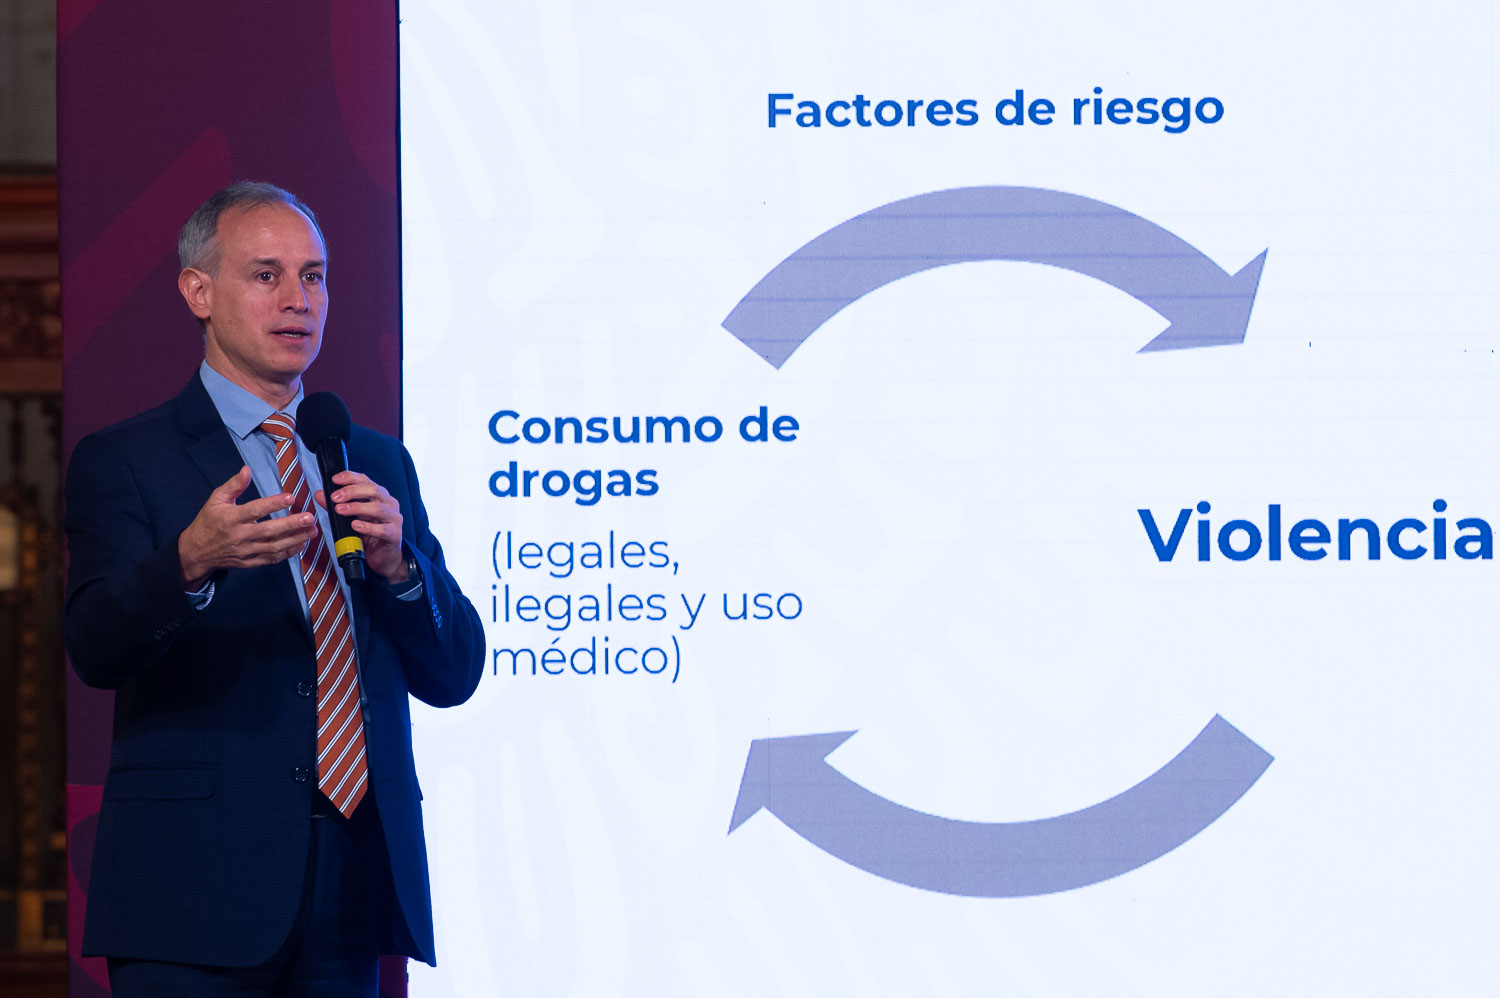 Consumo de drogas se relaciona con violencias, afirma López-Gatell